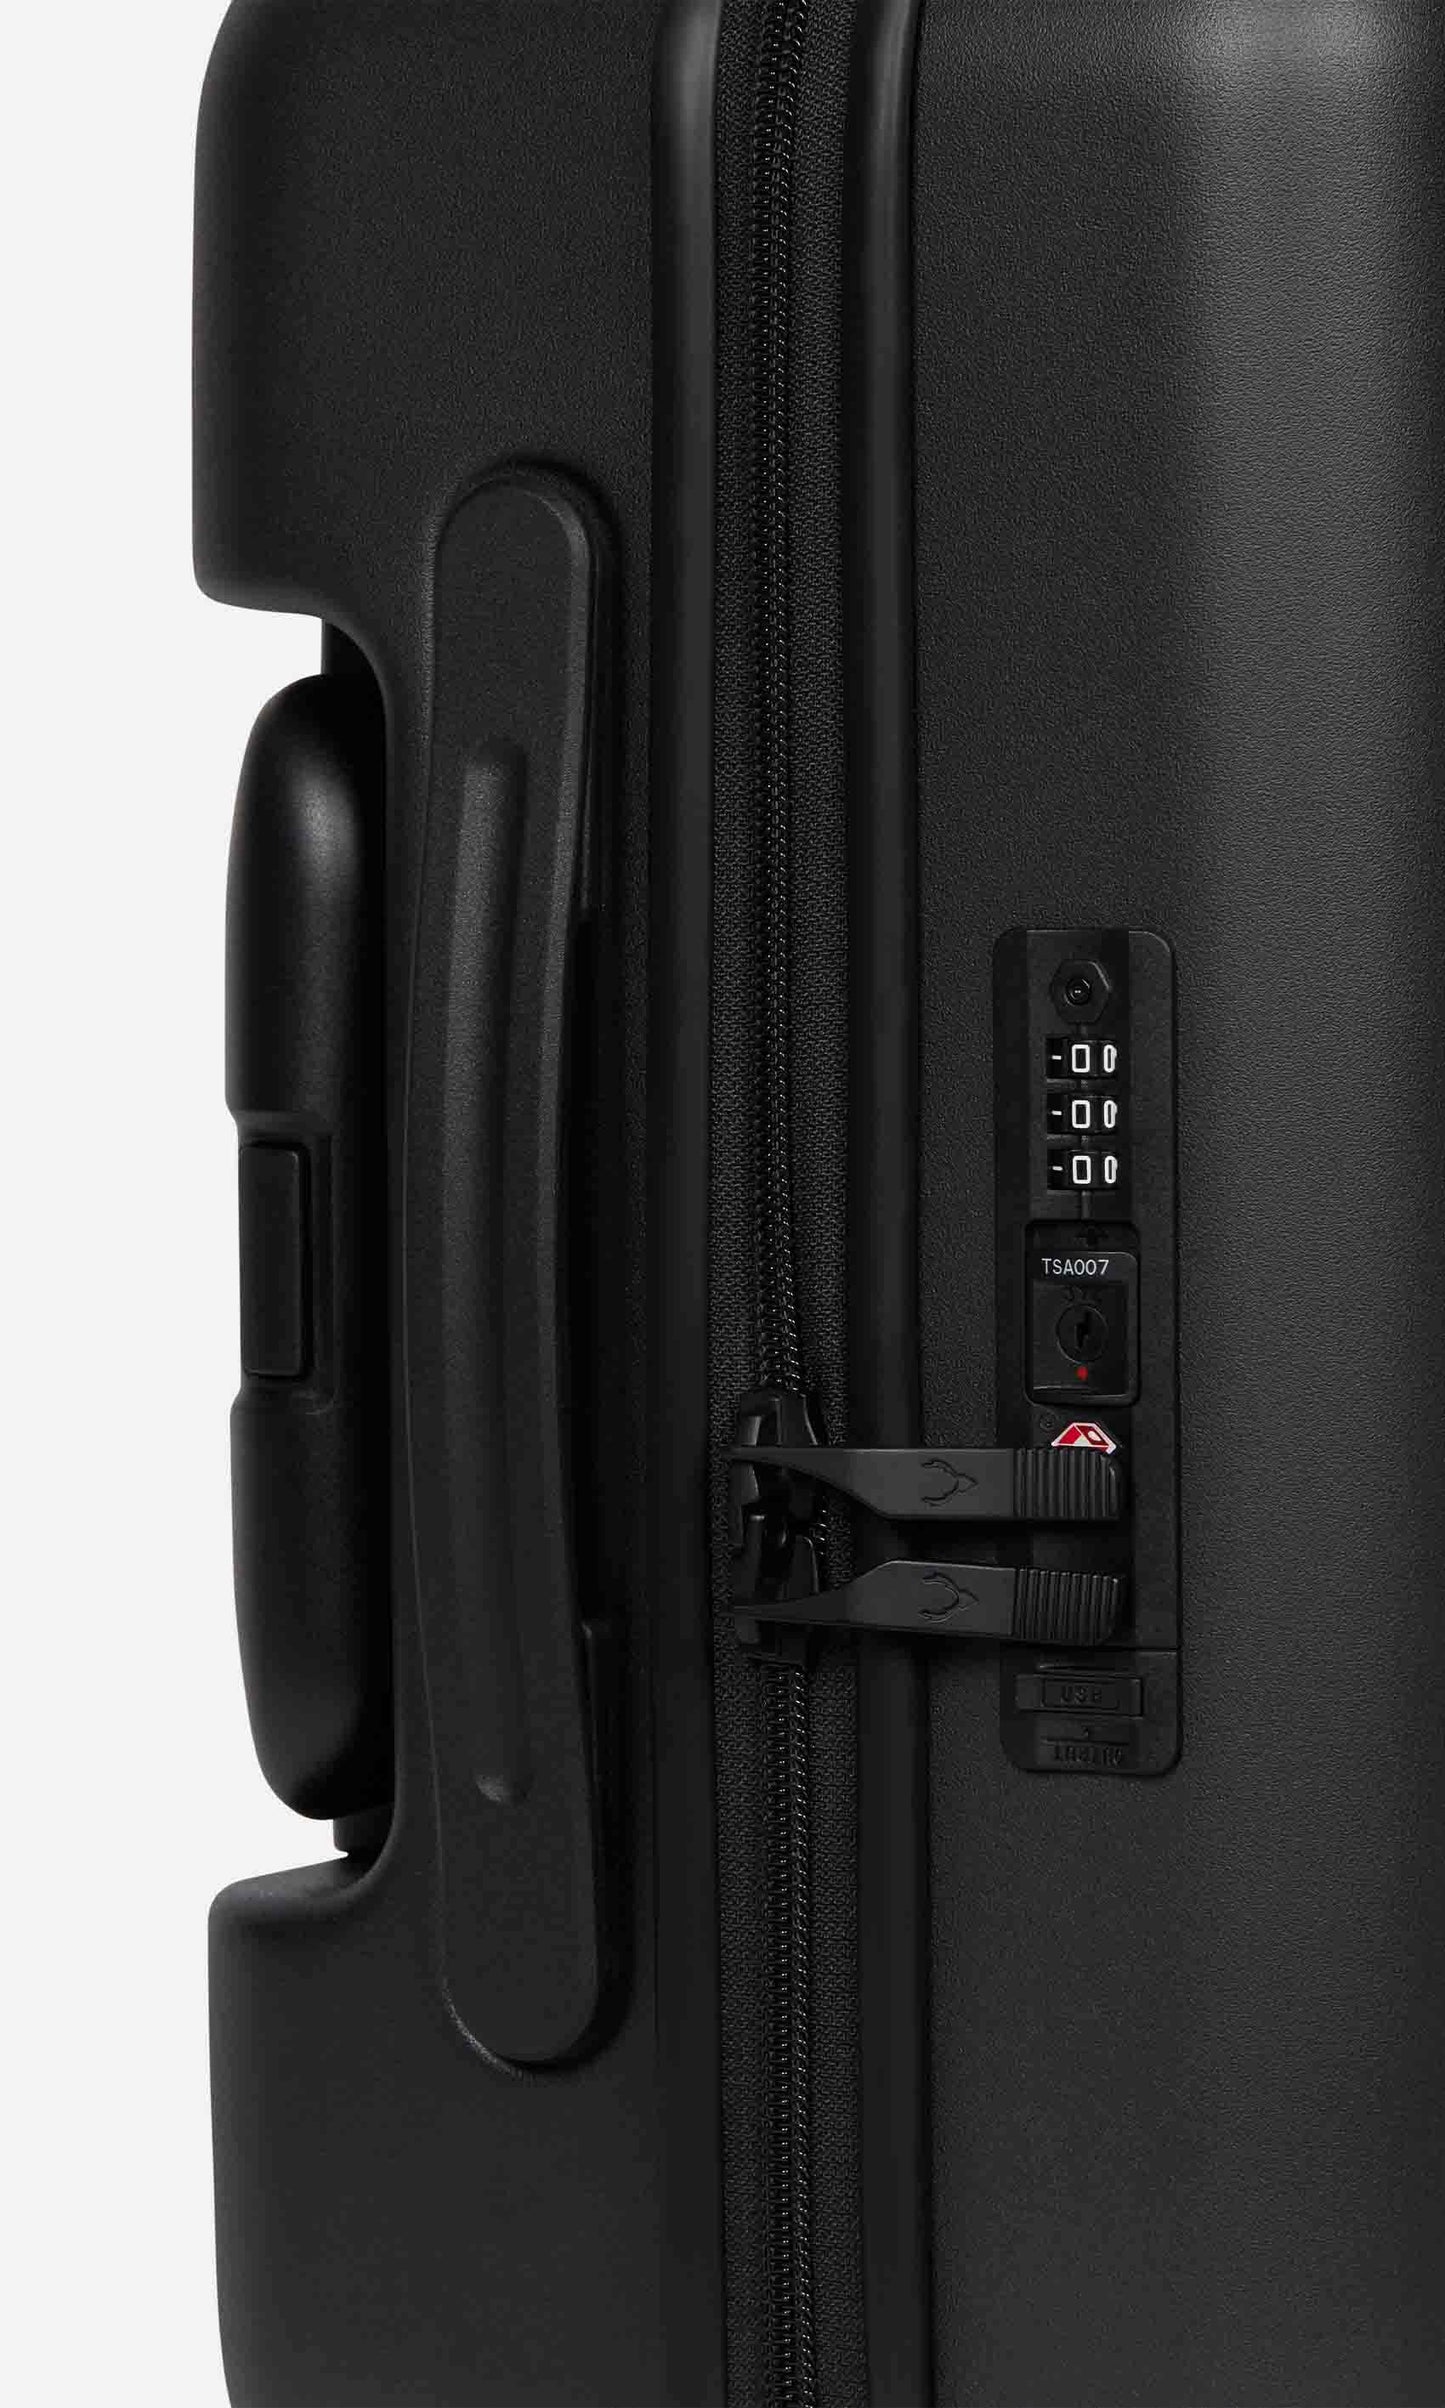 Antler Luggage -  Stamford cabin in black - Hard Suitcases Stamford Cabin Suitcase Black | Hard Luggage | Antler UK